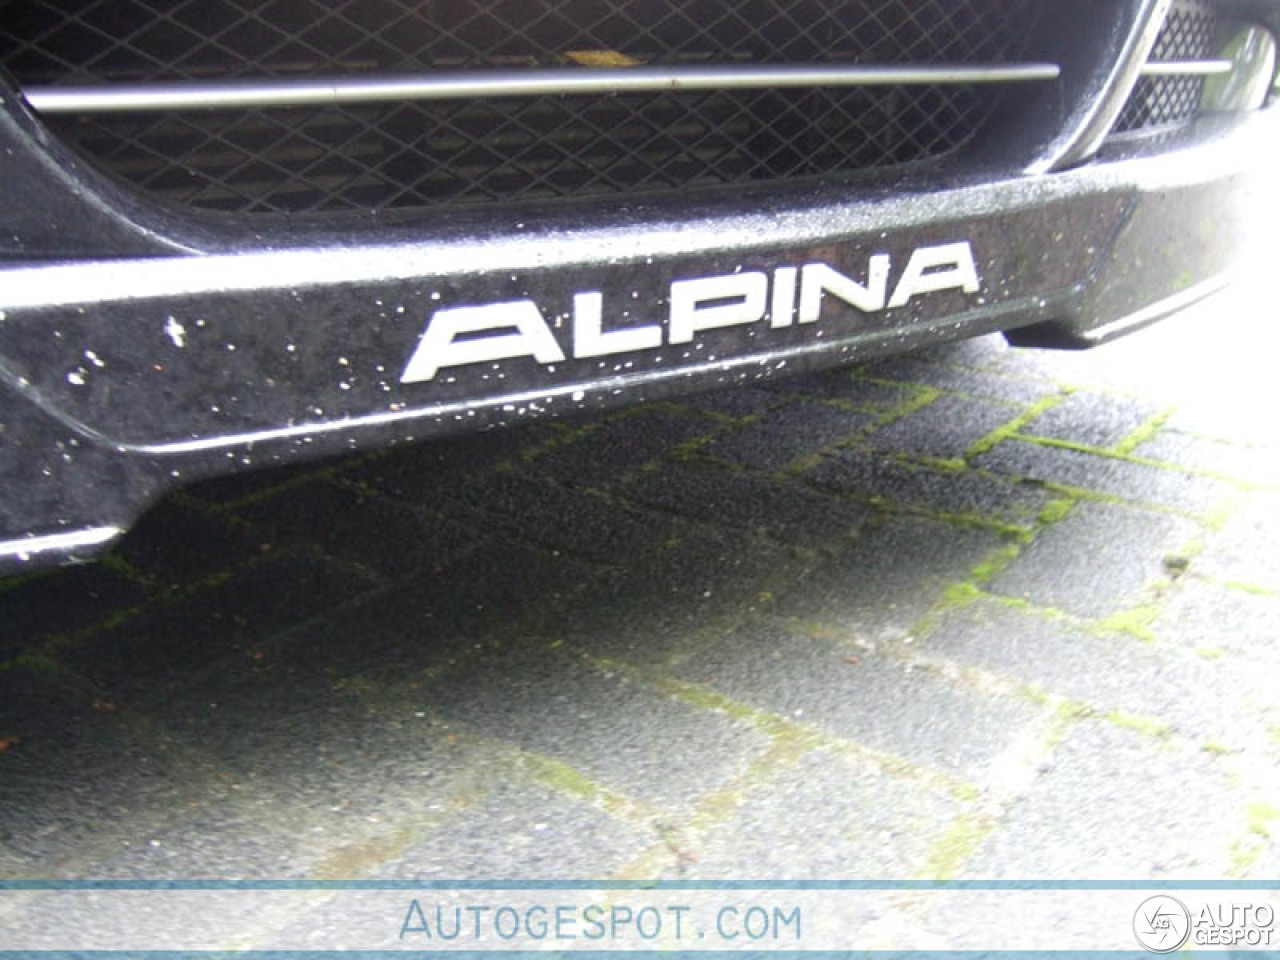 Alpina D3 Sedan